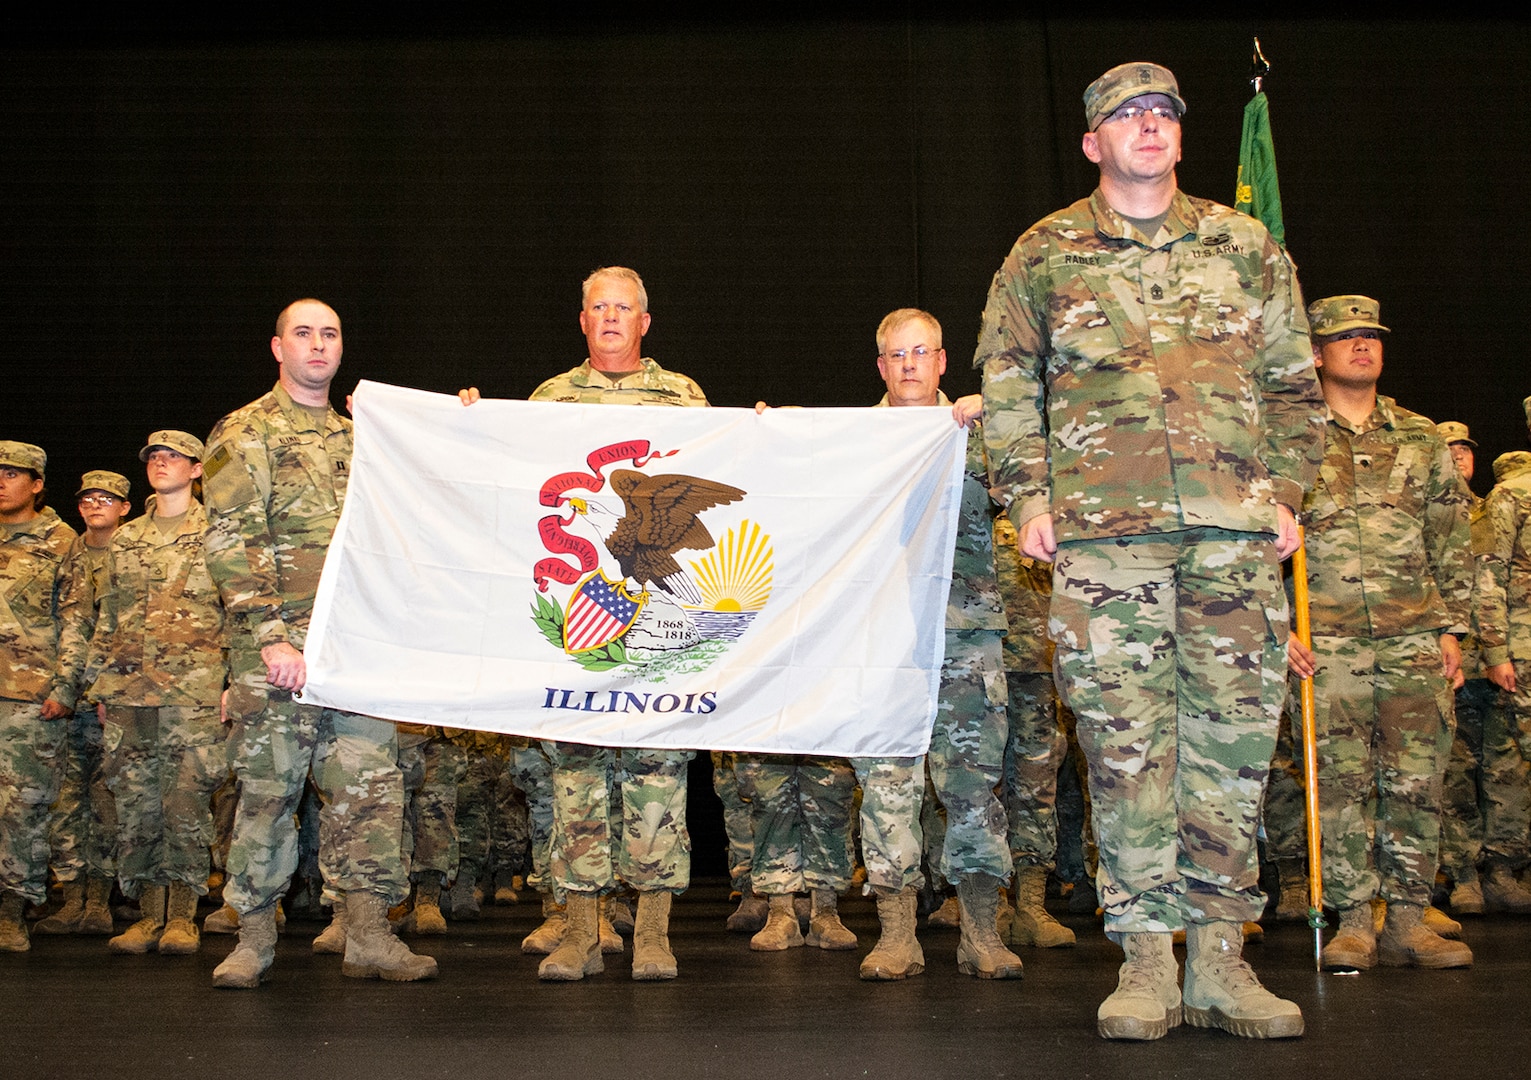 333rd receives Illinois flag